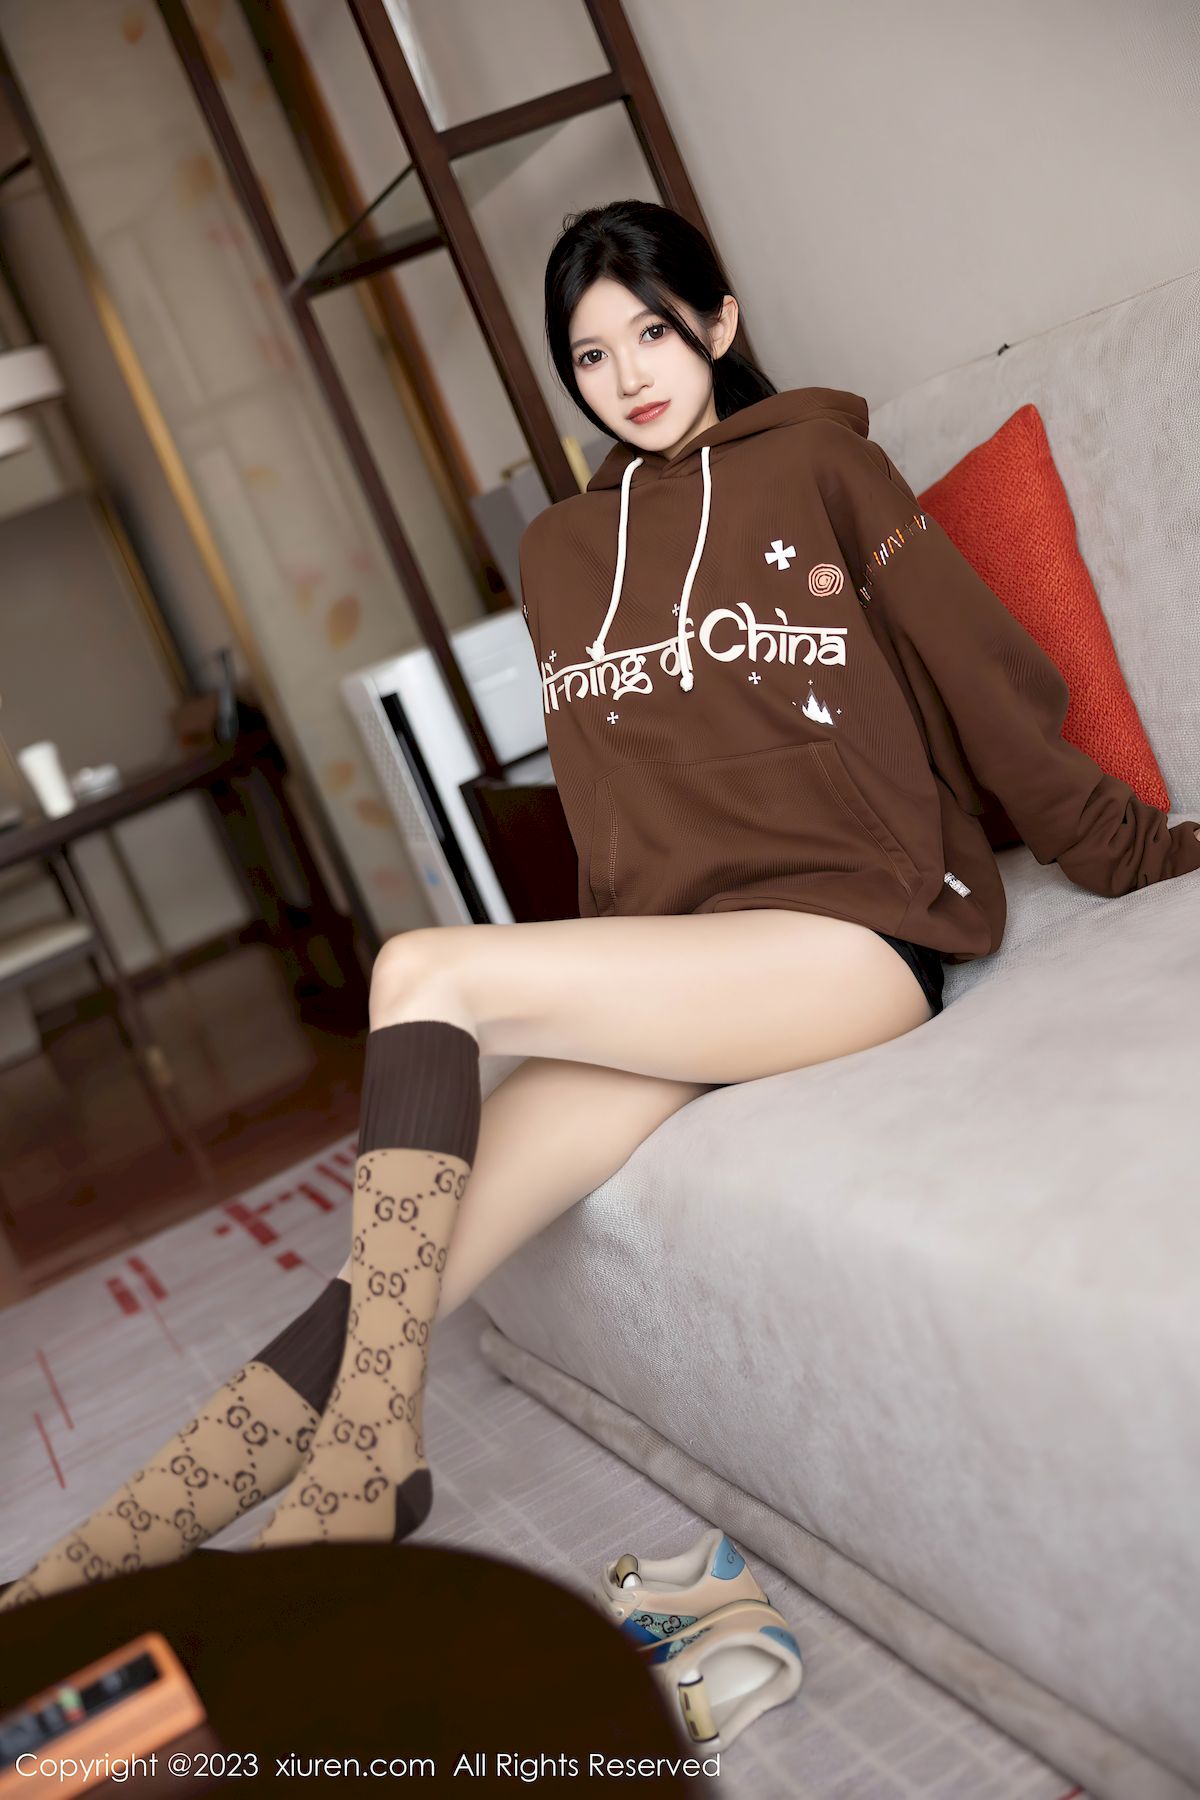 秀人网模特程程程-咖啡色卫衣搭配原色丝袜性感写真  程程程 秀人网 美女模特 丝袜美腿 第21张